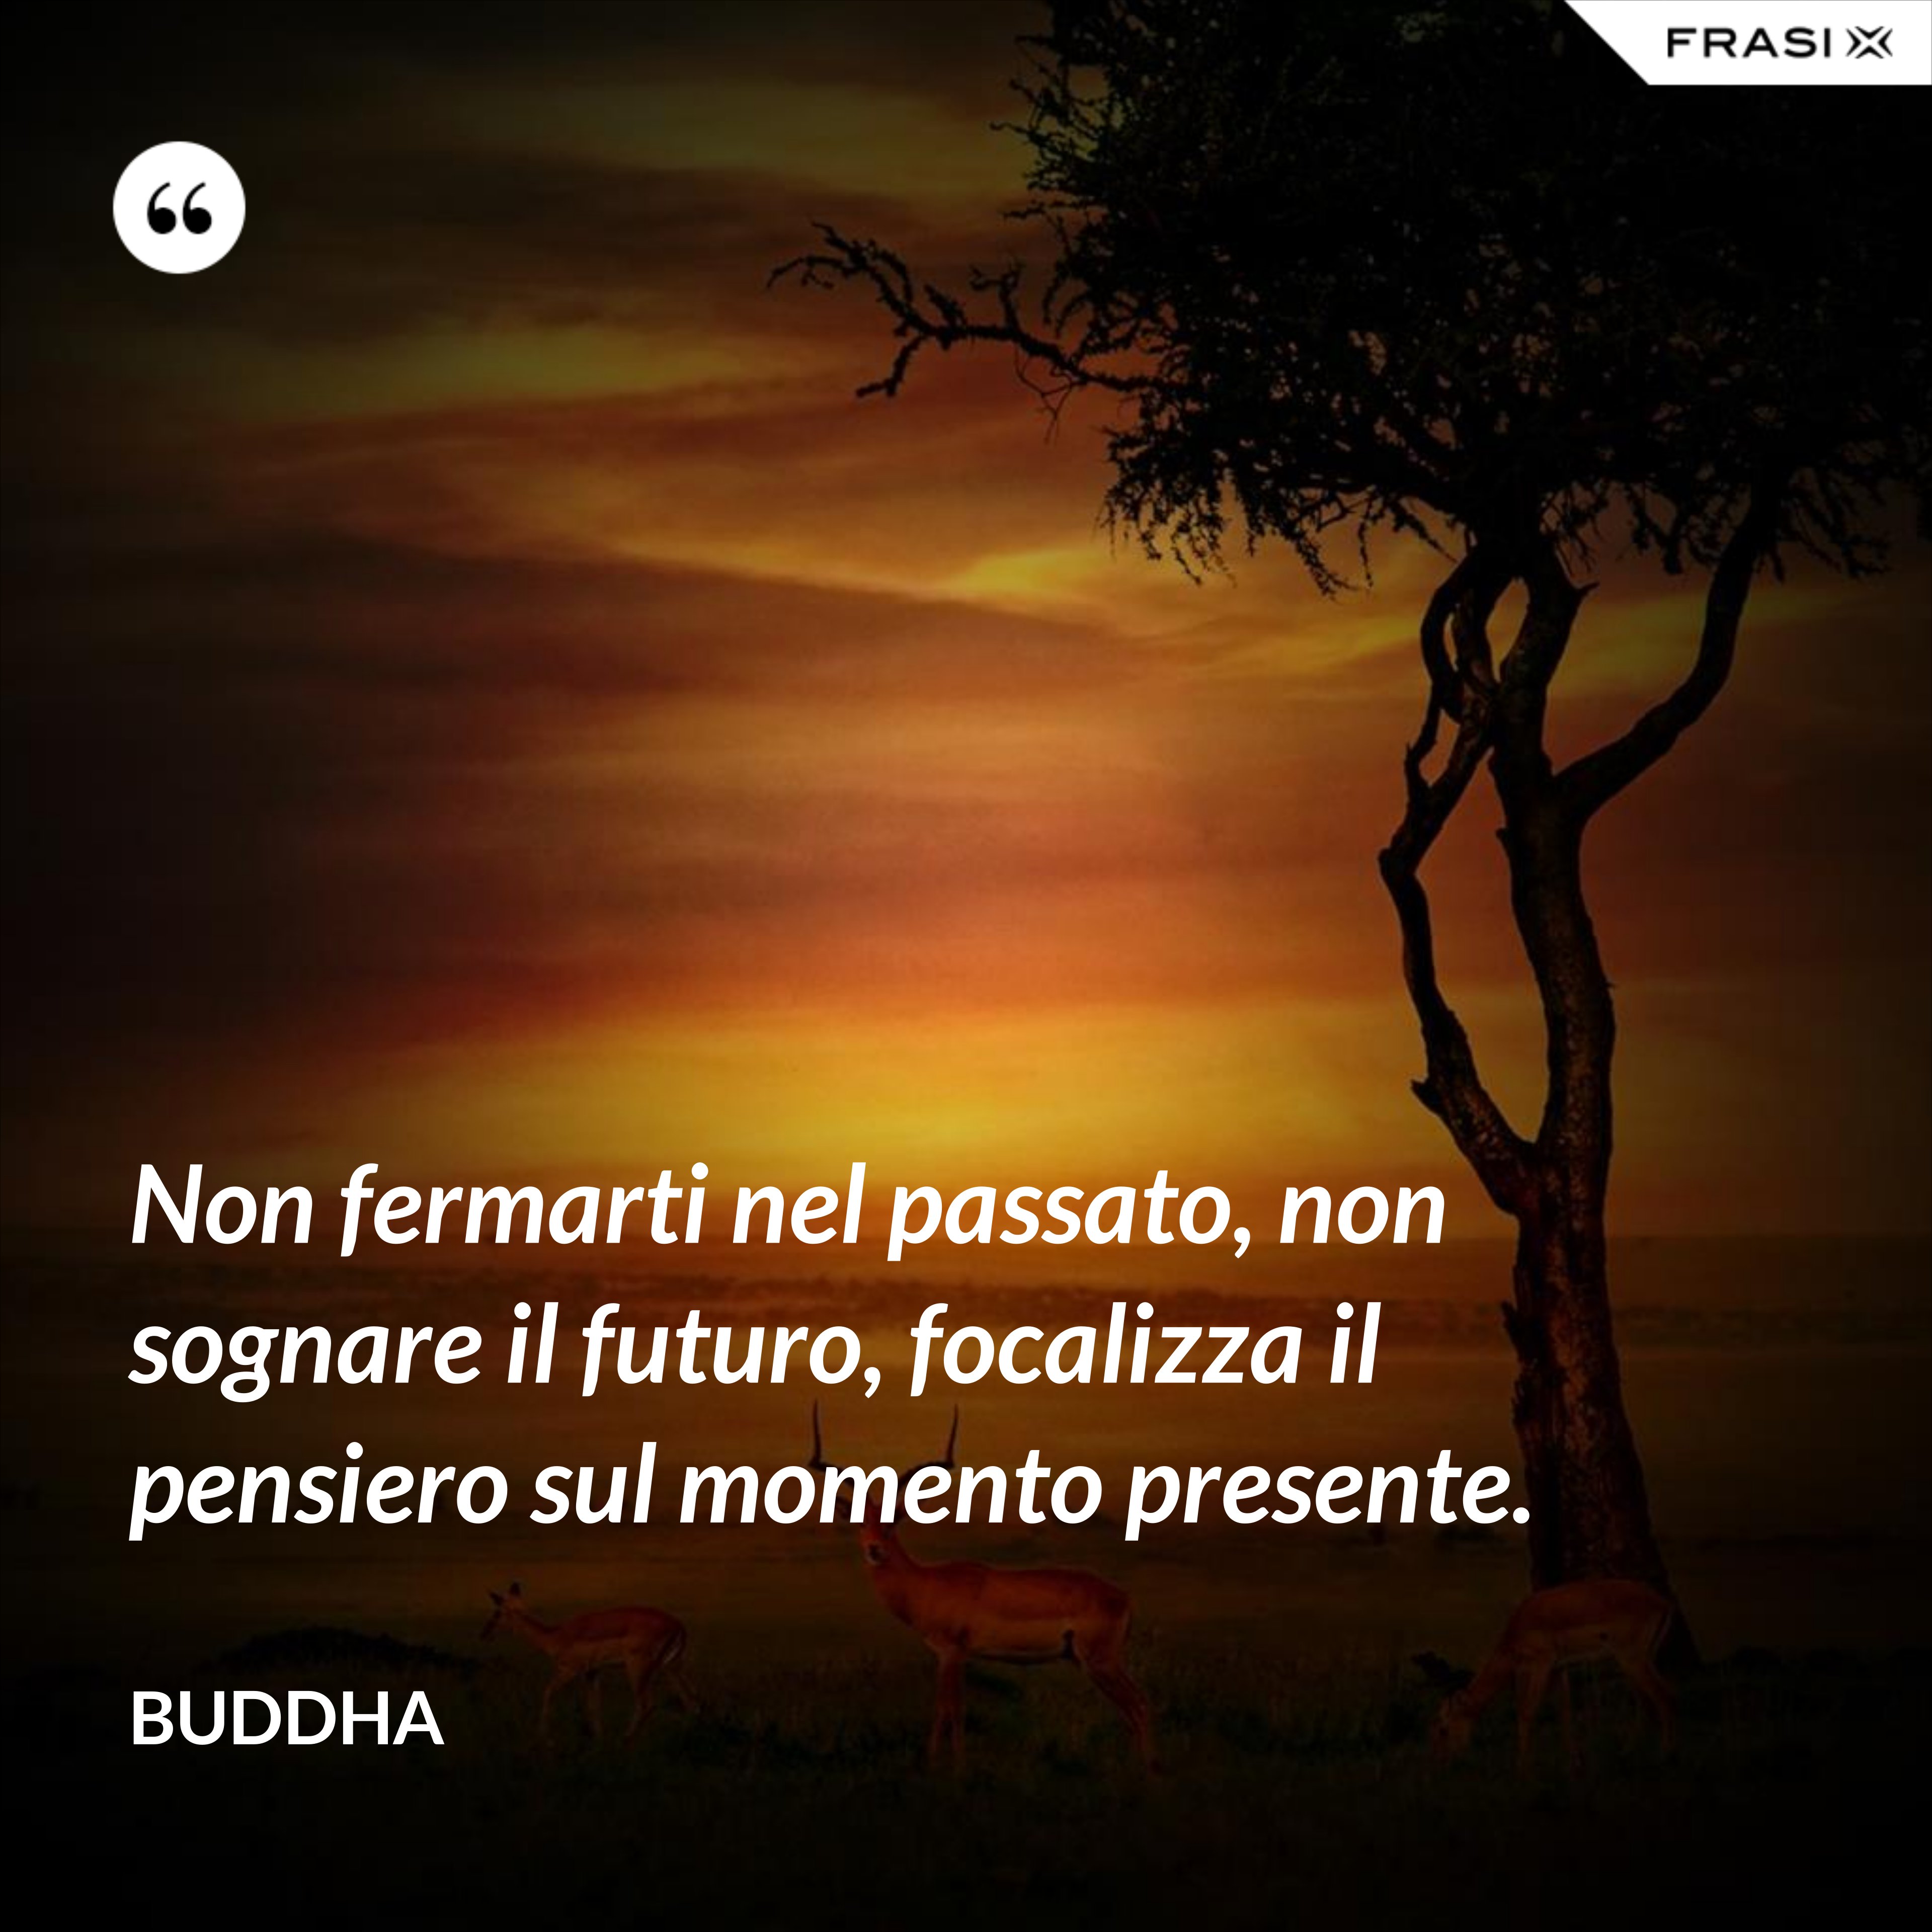 Non fermarti nel passato, non sognare il futuro, focalizza il pensiero sul momento presente. - Buddha